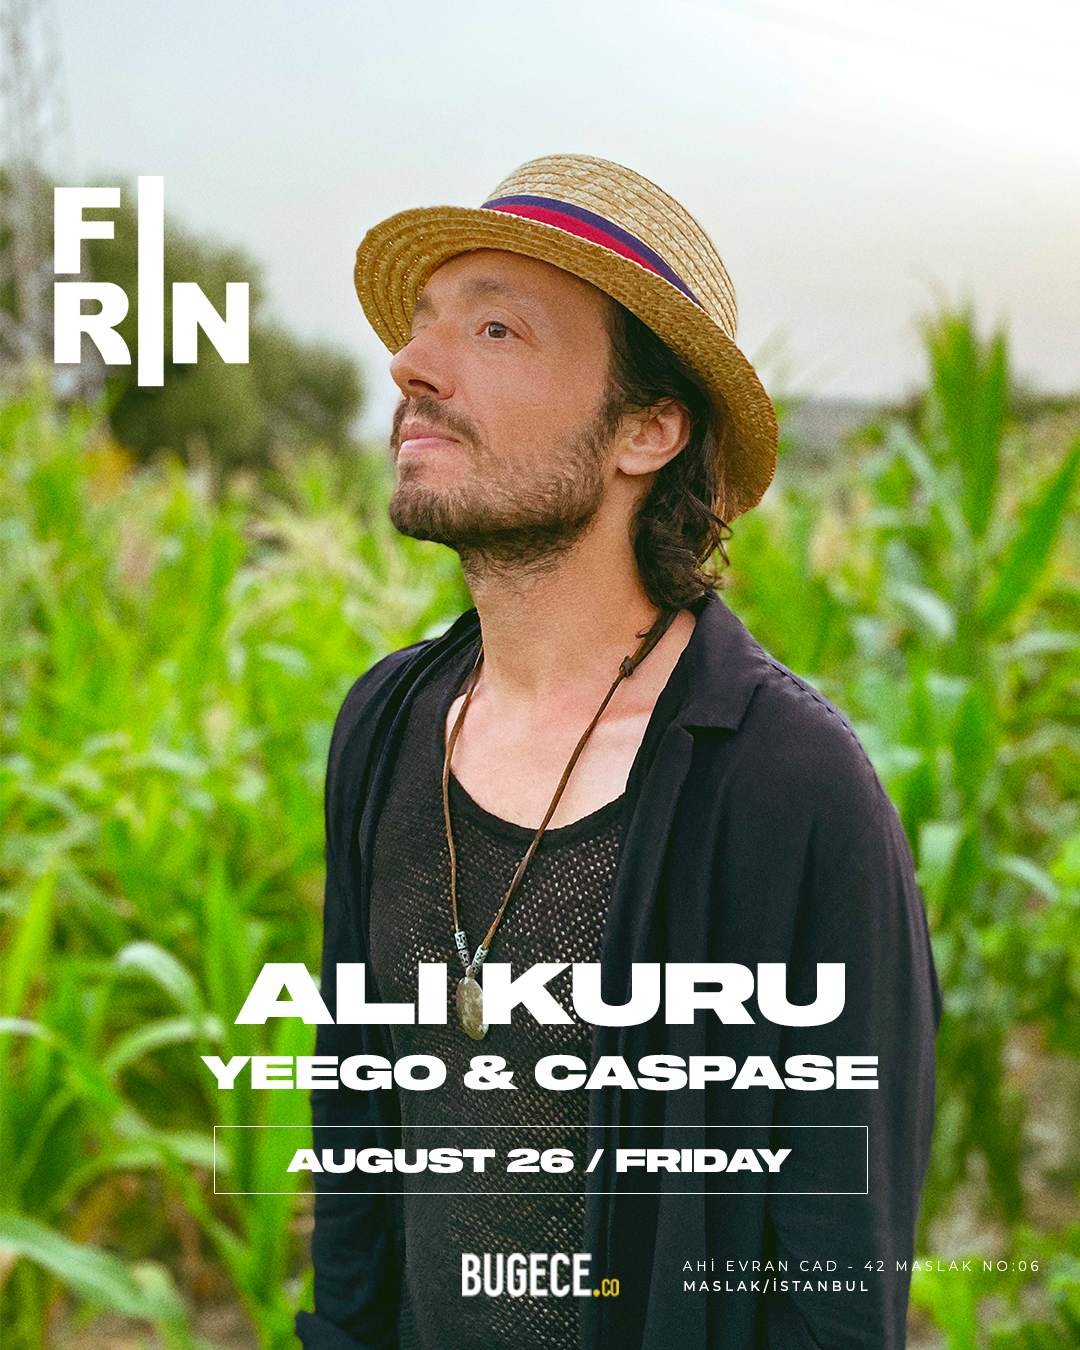 FIRIN x Ali Kuru - フライヤー表